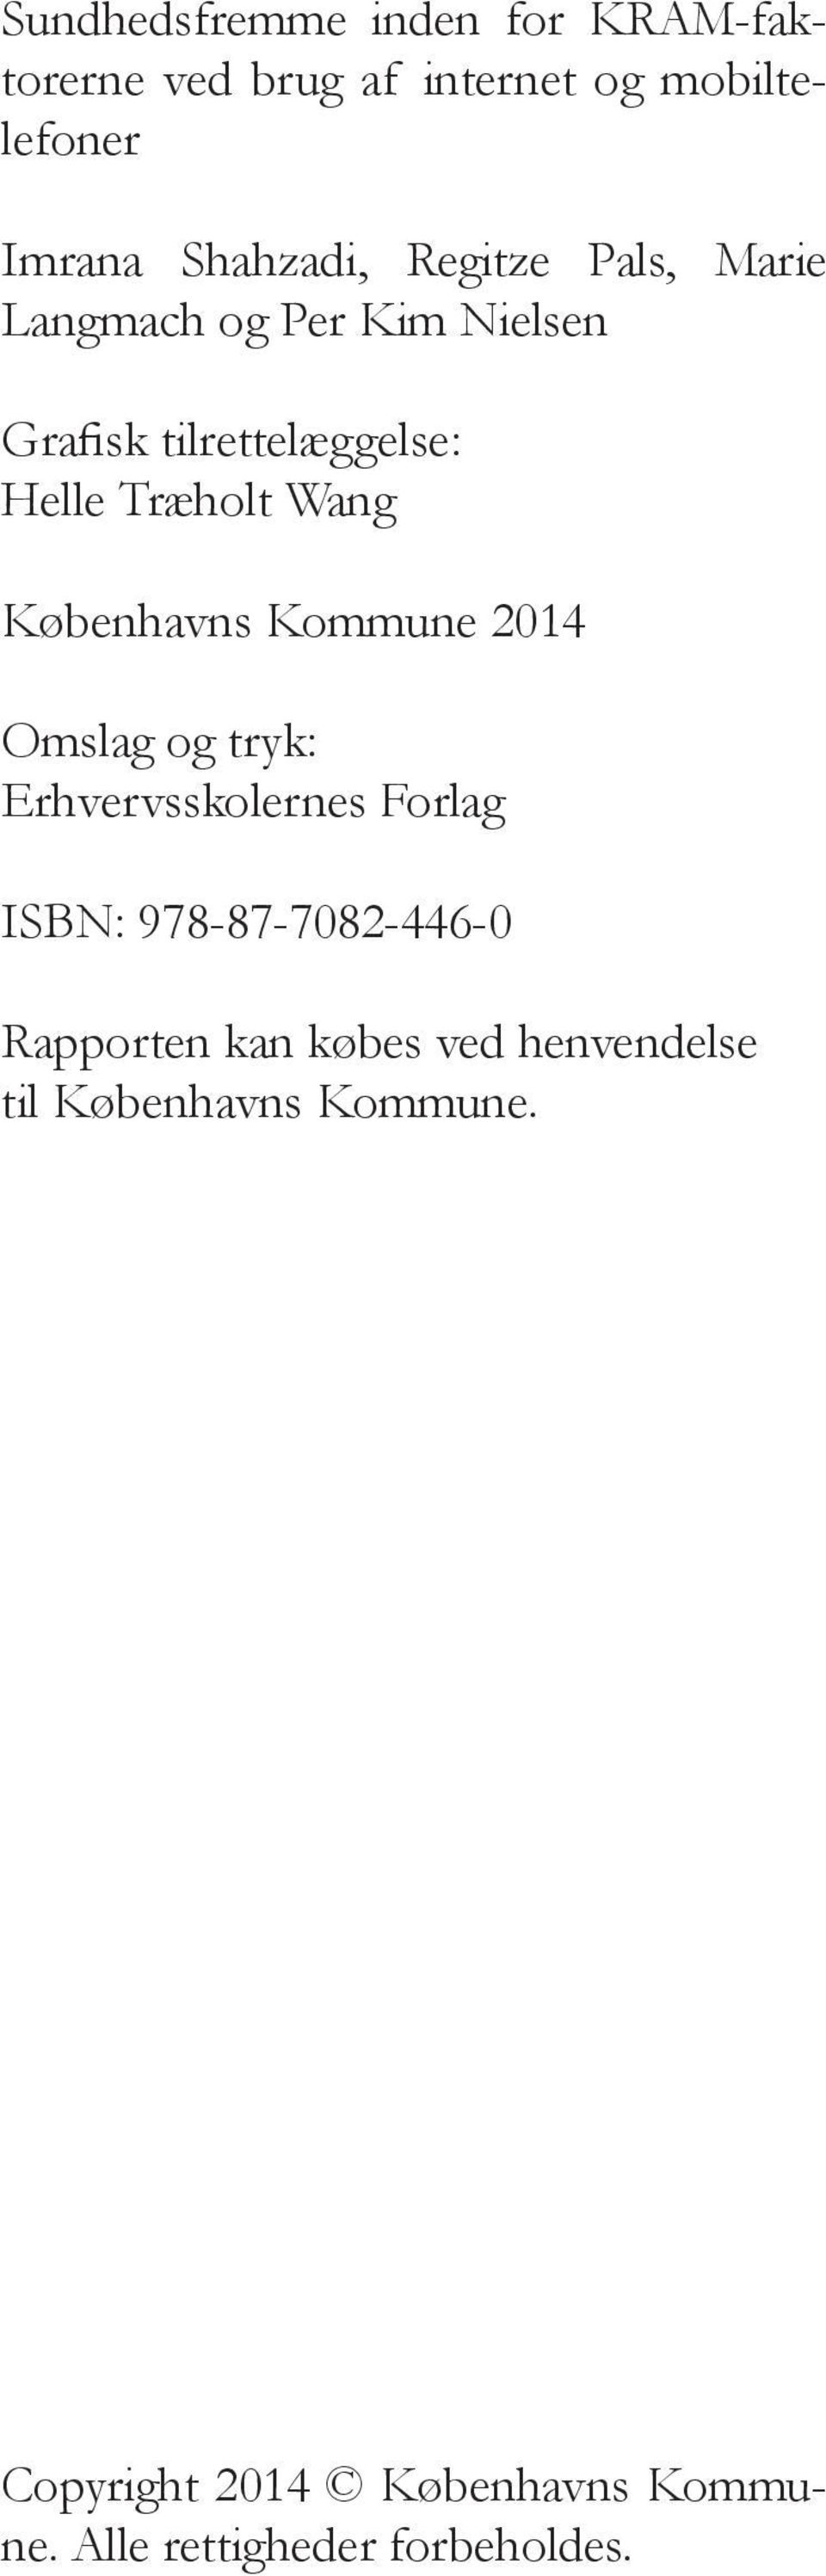 Københavns Kommune 2014 Omslag og tryk: Erhvervsskolernes Forlag ISBN: 978-87-7082-446-0 Rapporten